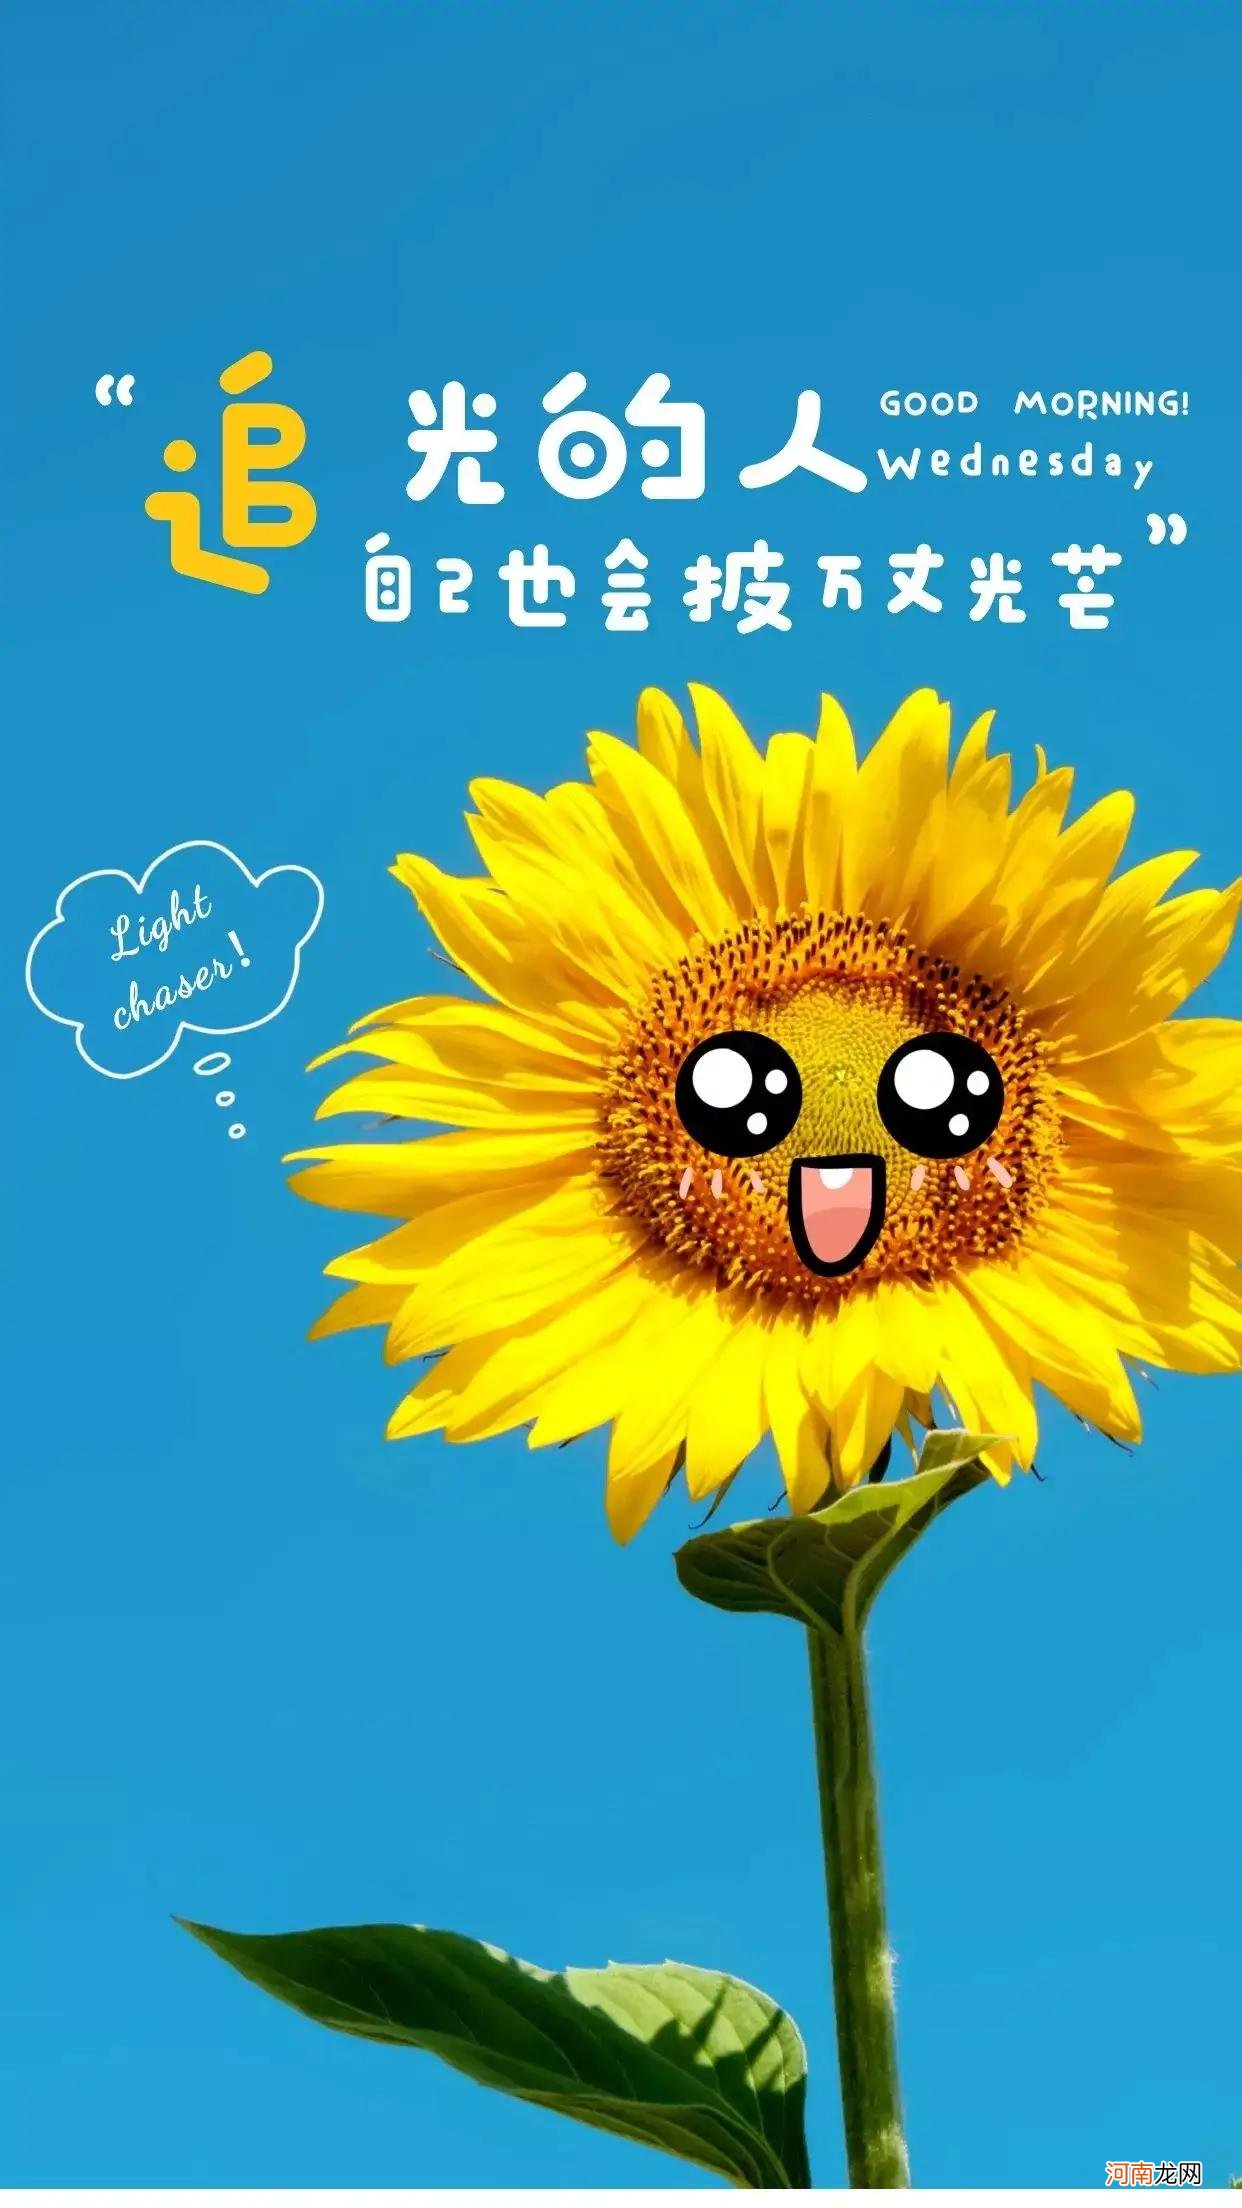 有向日葵的经典短句 像向日葵一样充满阳光励志